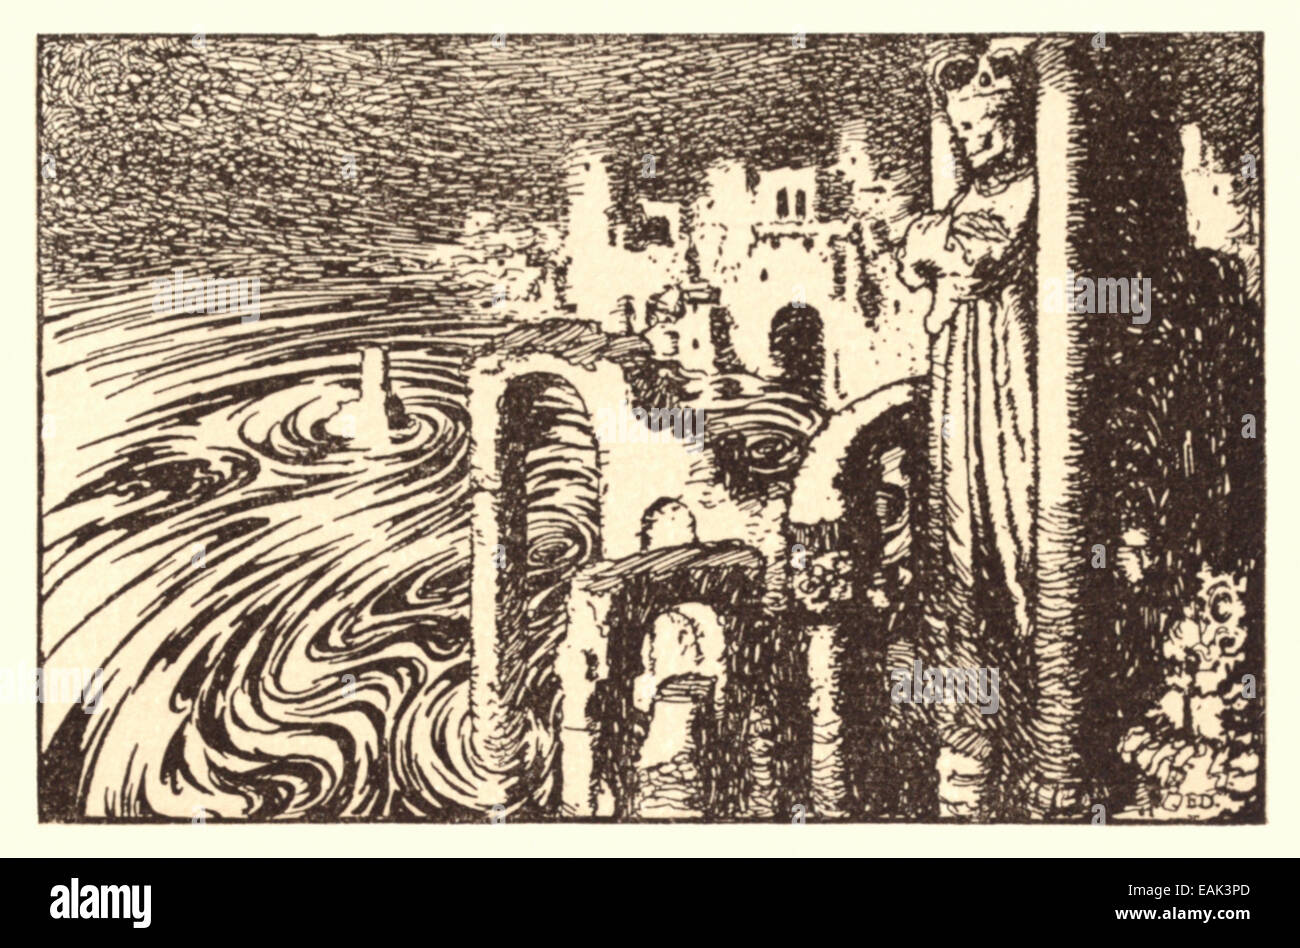 La città di mare - Edmund Dulac illustrazione da 'campane e altre poesie'. Vedere la descrizione per ulteriori informazioni Foto Stock